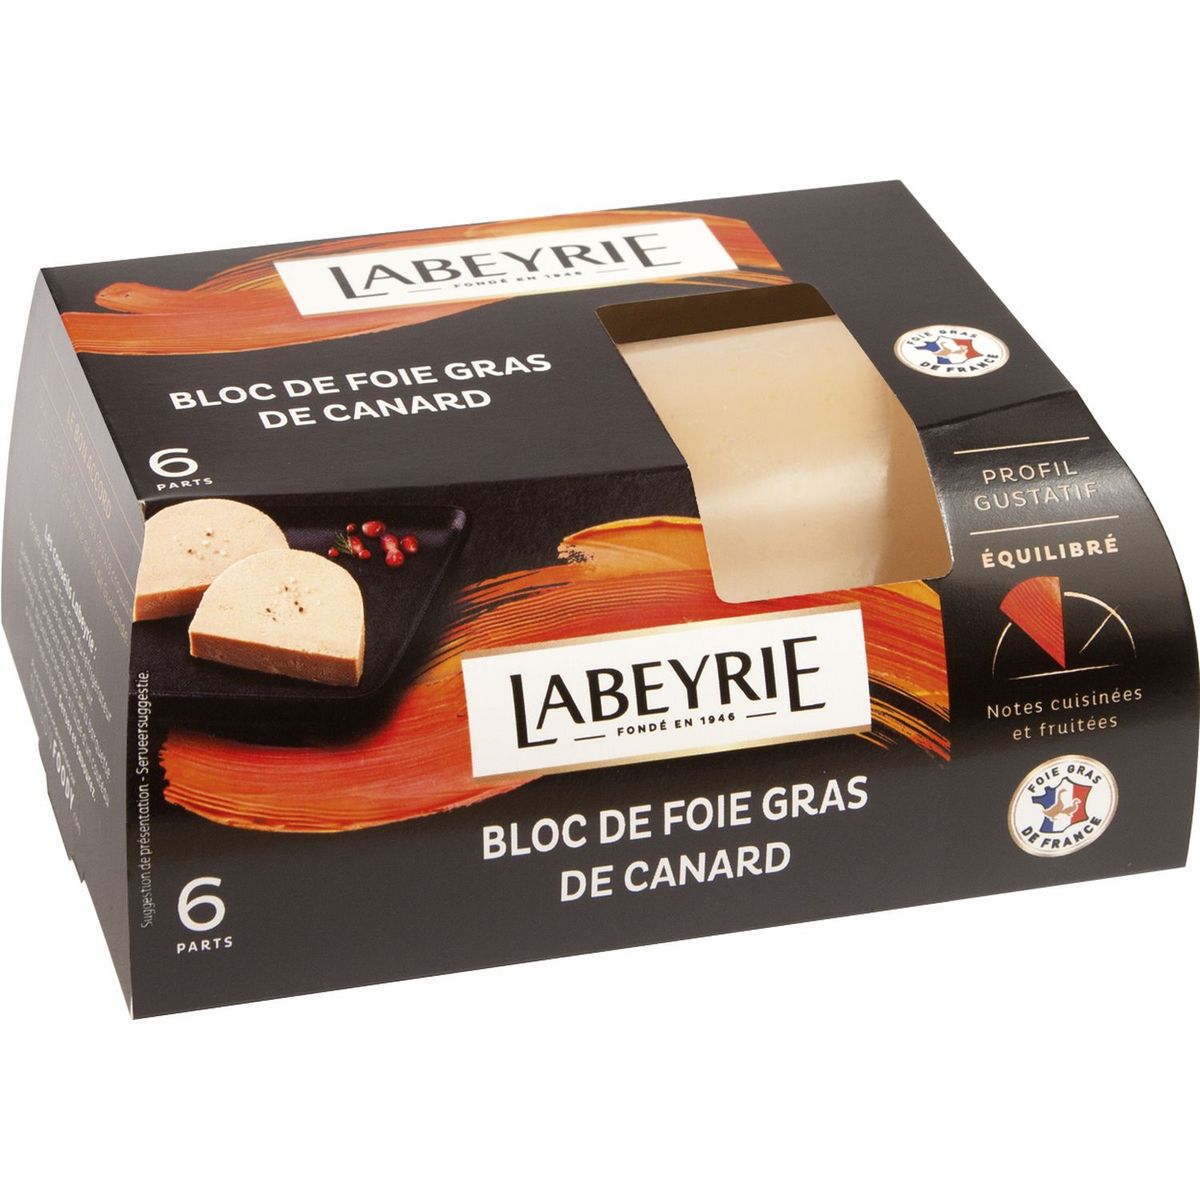 LABEYRIE Bloc de foie gras de canard 200g pas cher 